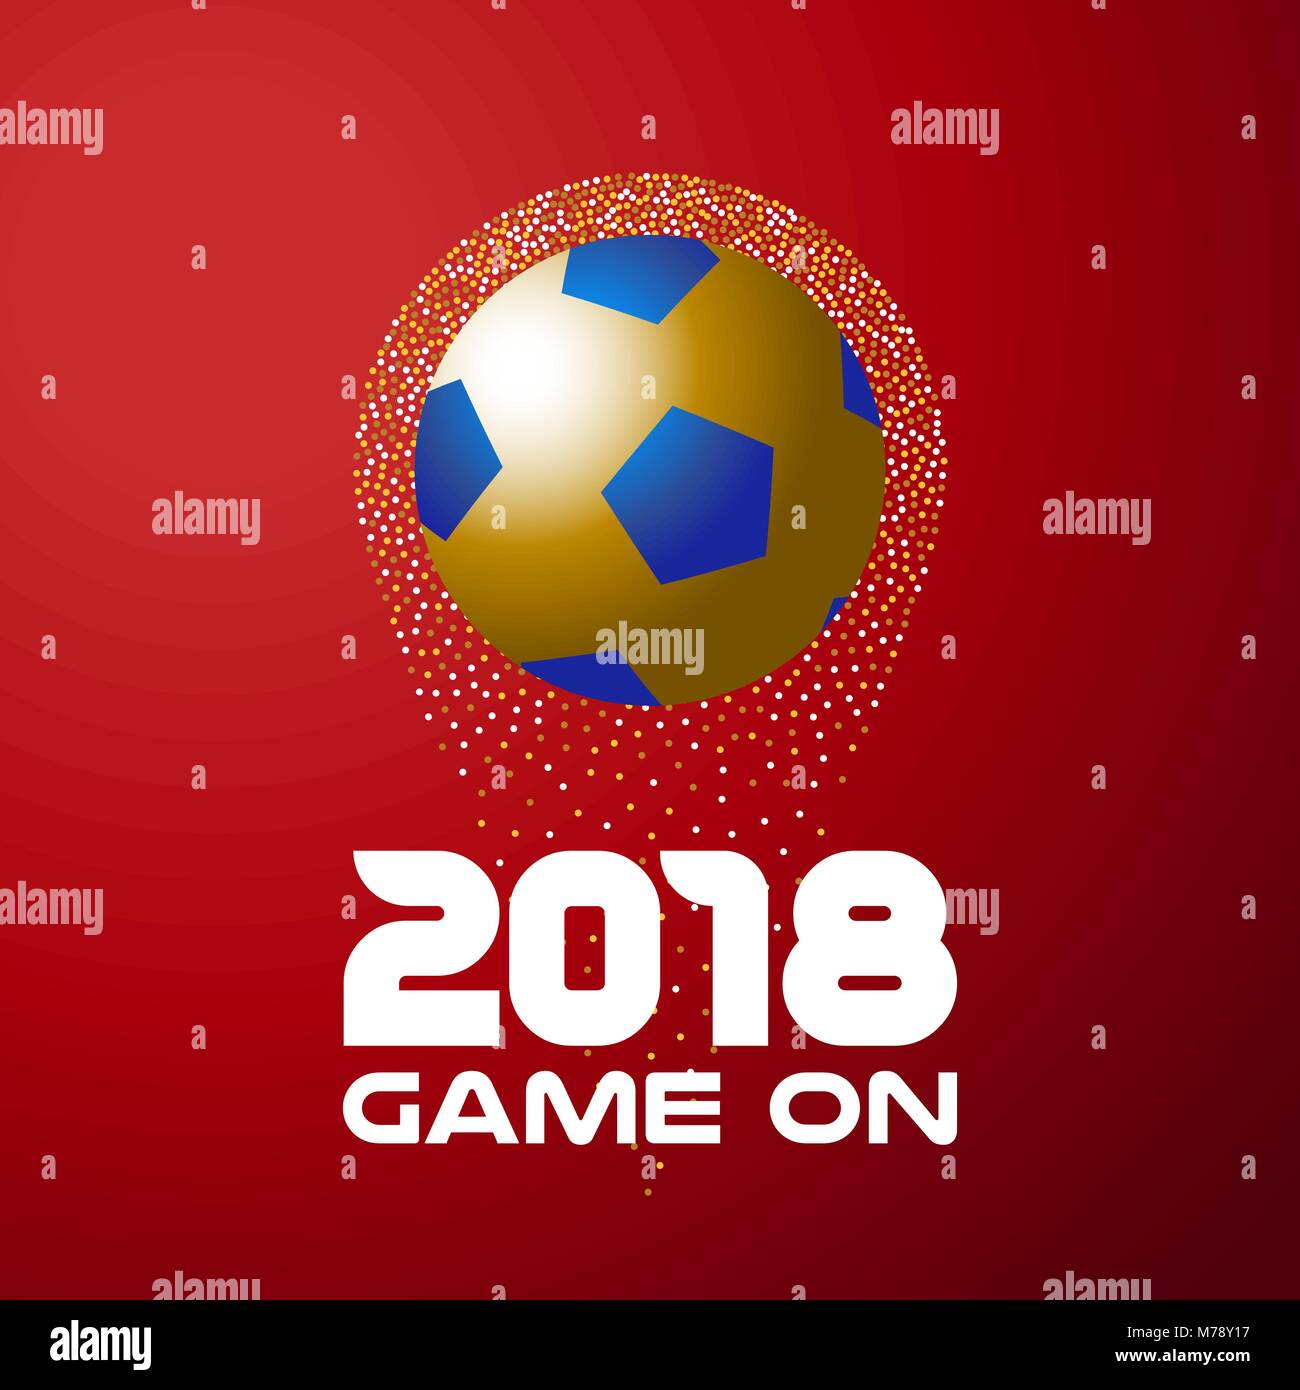 Gold Fußball auf rote Farbe Hintergrund mit der Typografie 2018 zitieren. Ideal für Fußball oder eine Sportveranstaltung. EPS 10 Vektor. Stock Vektor